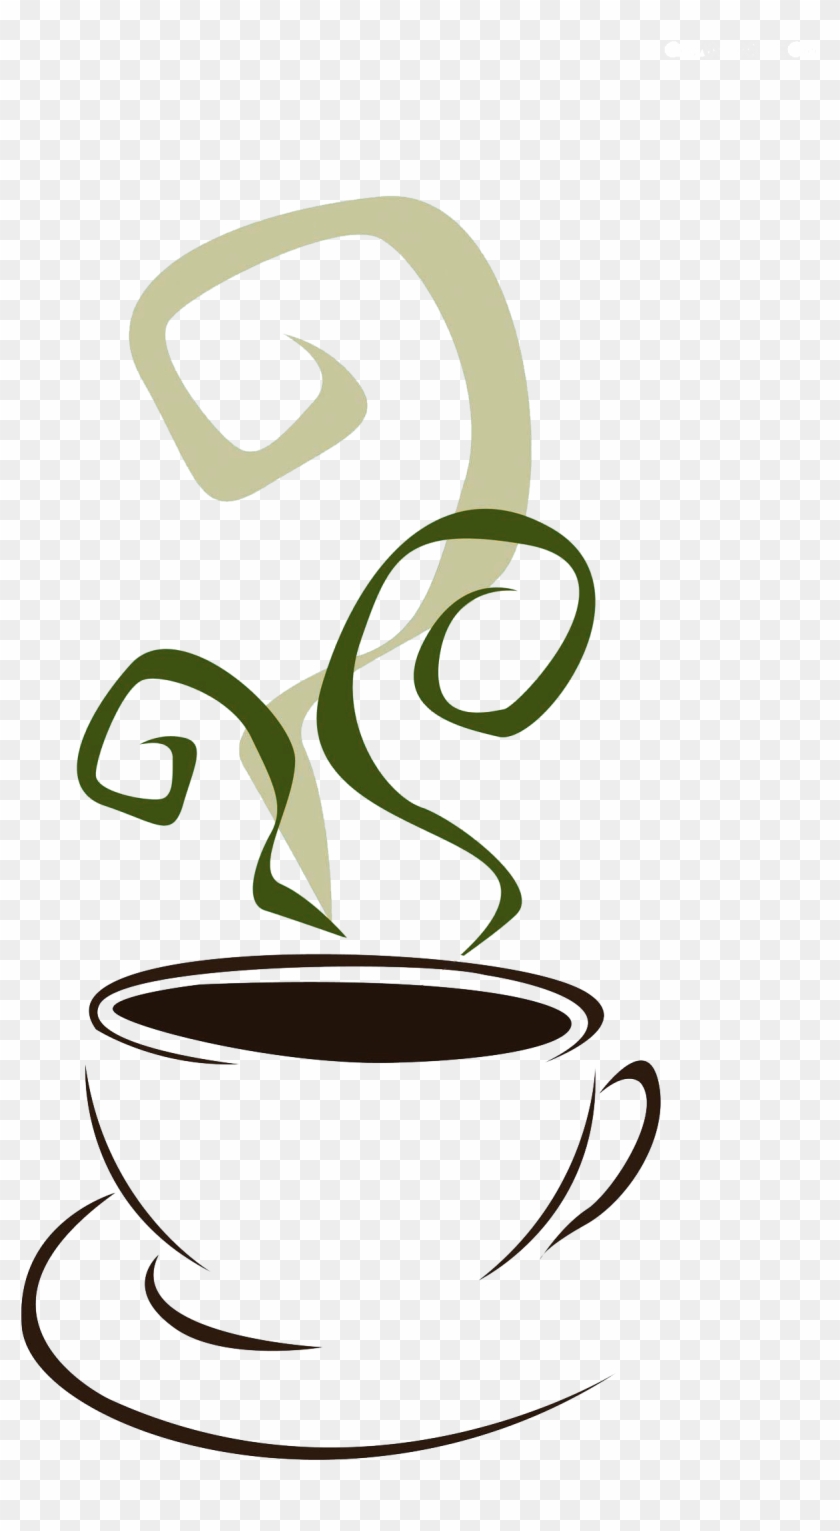 Coffee Tea Stock Illustration Non-dairy Creamer Clip - Coffee Tea Stock Illustration Non-dairy Creamer Clip #608362